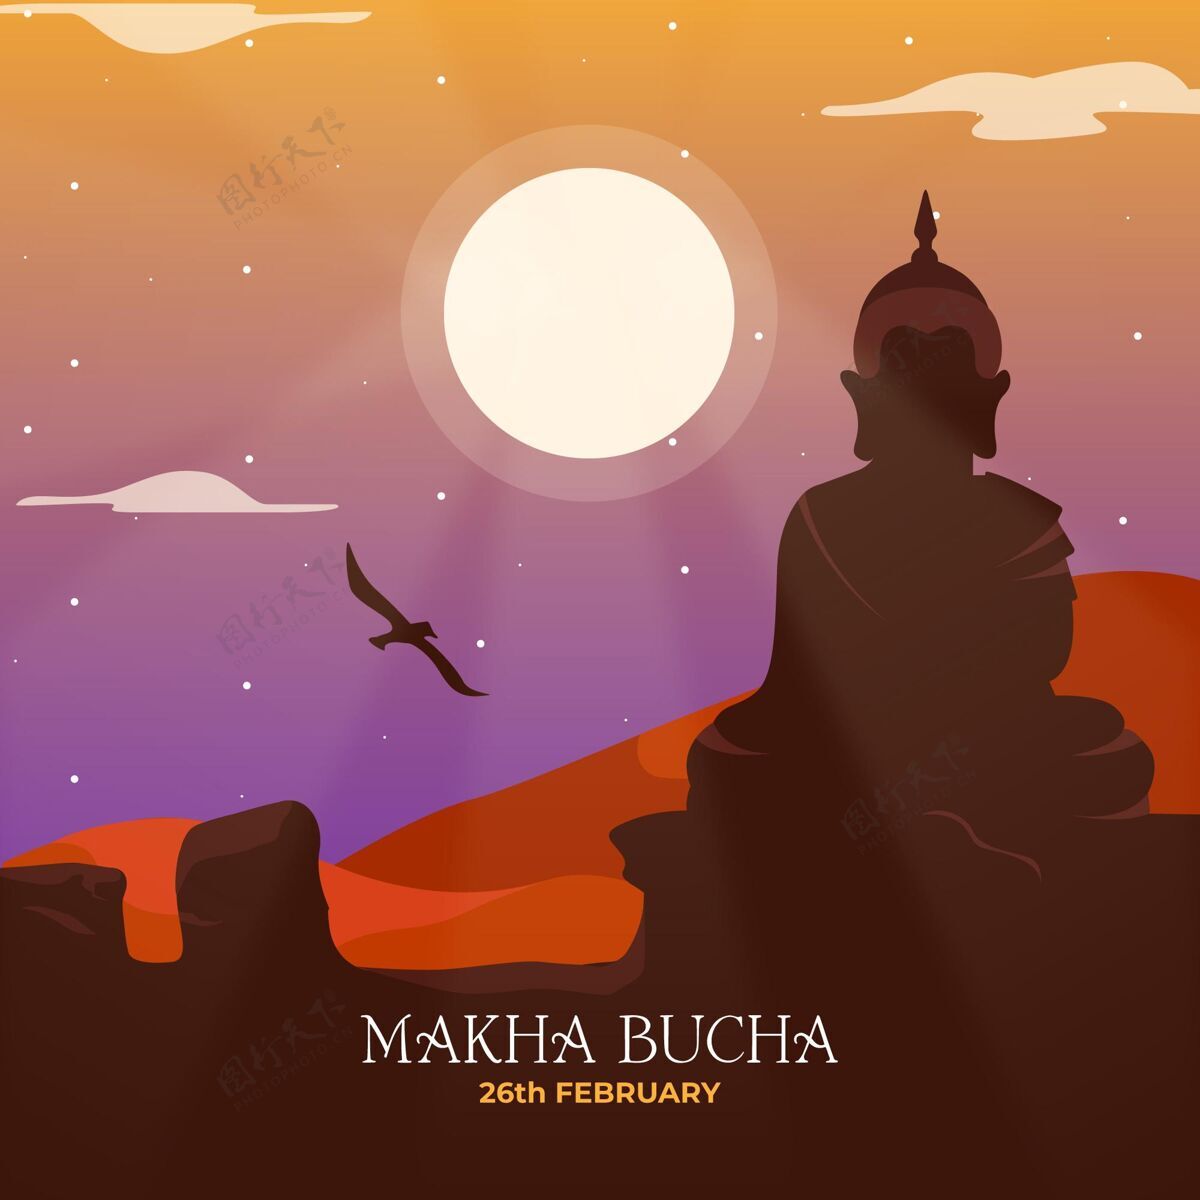 满月详细的makhabucha日插图庆典佛教斯里兰卡